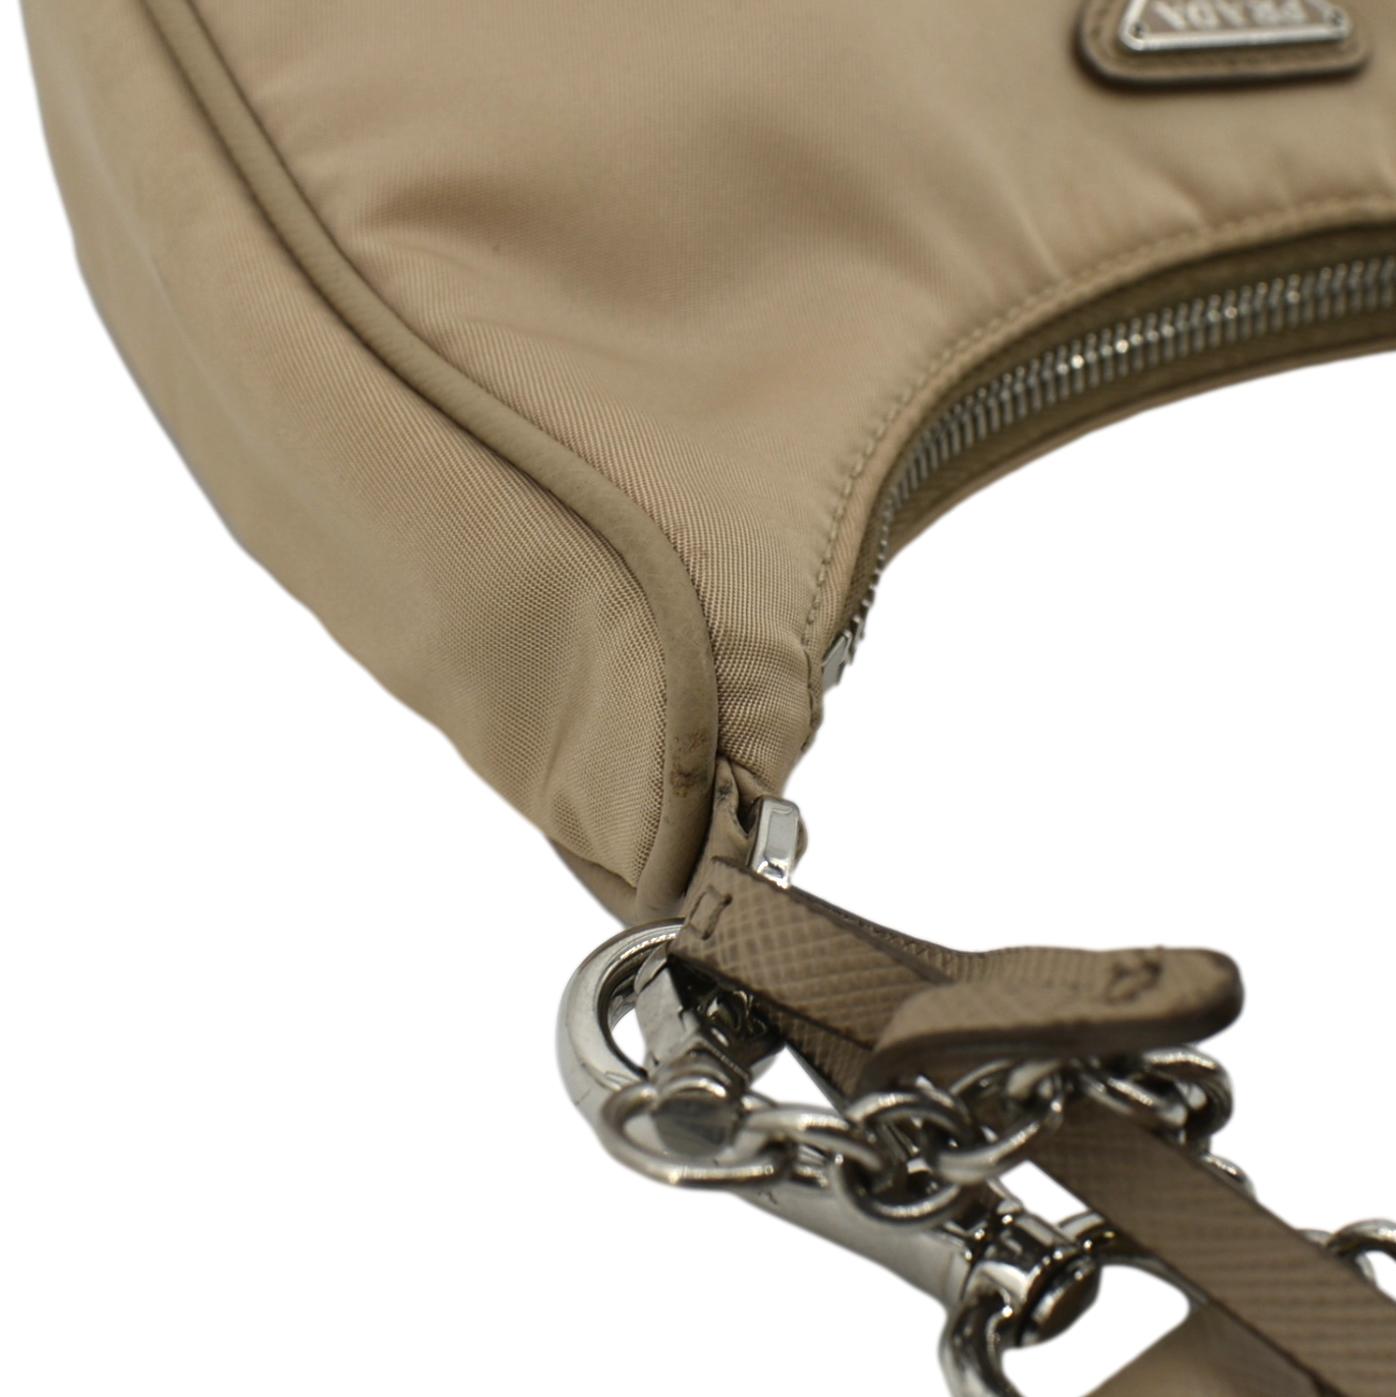 Prada Re-Nylon Shoulder Bag - Brown